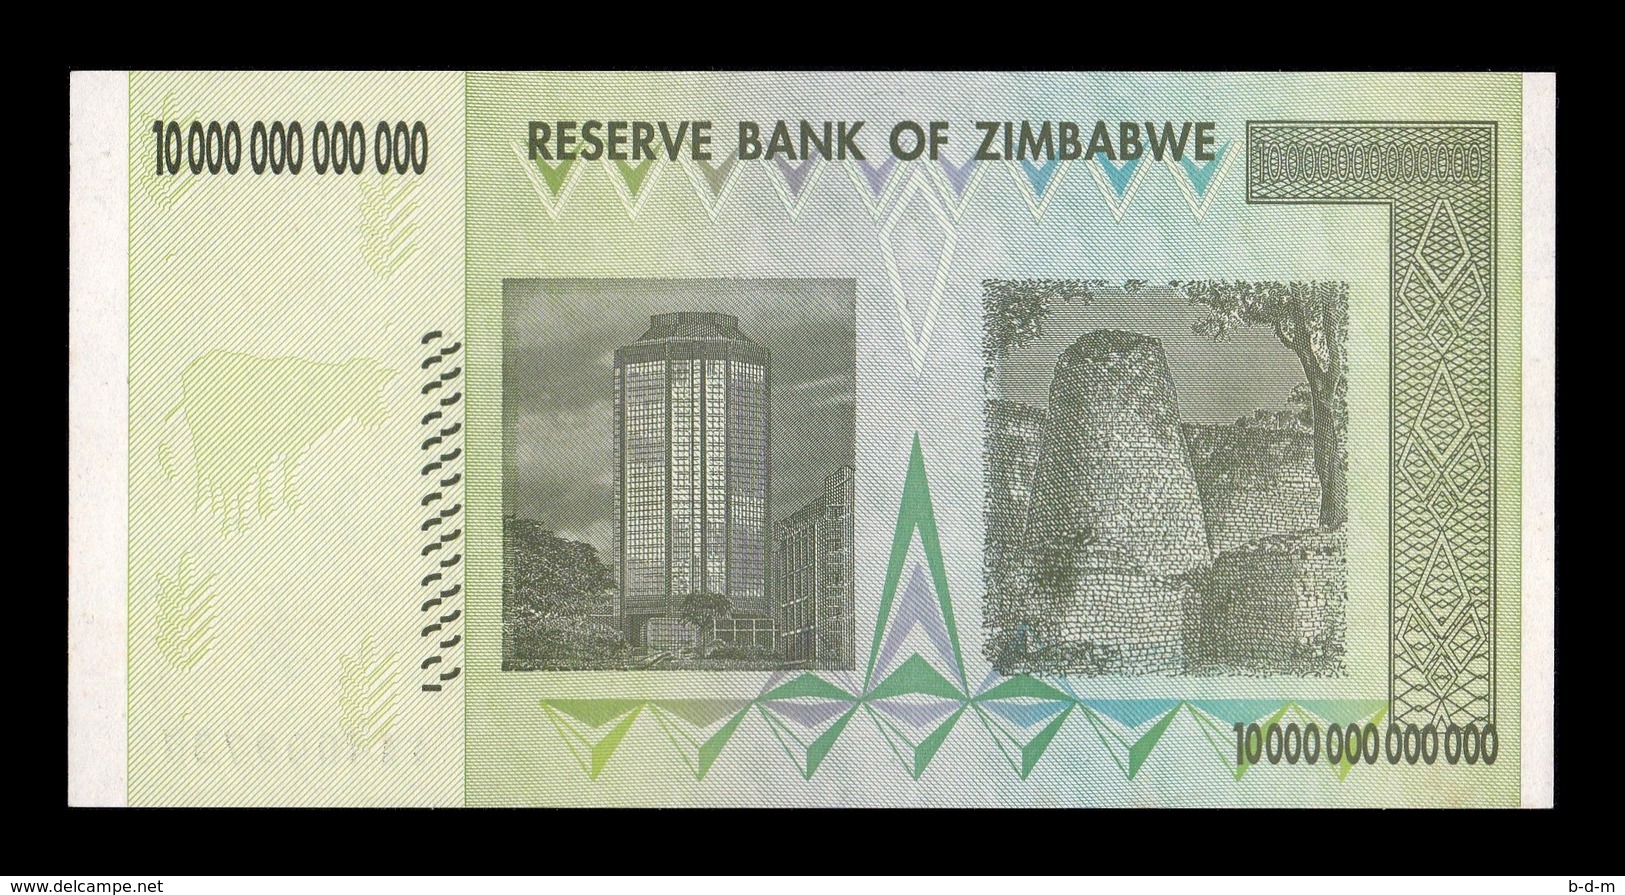 Zimbabwe 10000000000000 10 Trillion Dollars 2008 Pick 88 SC UNC - Zimbabwe